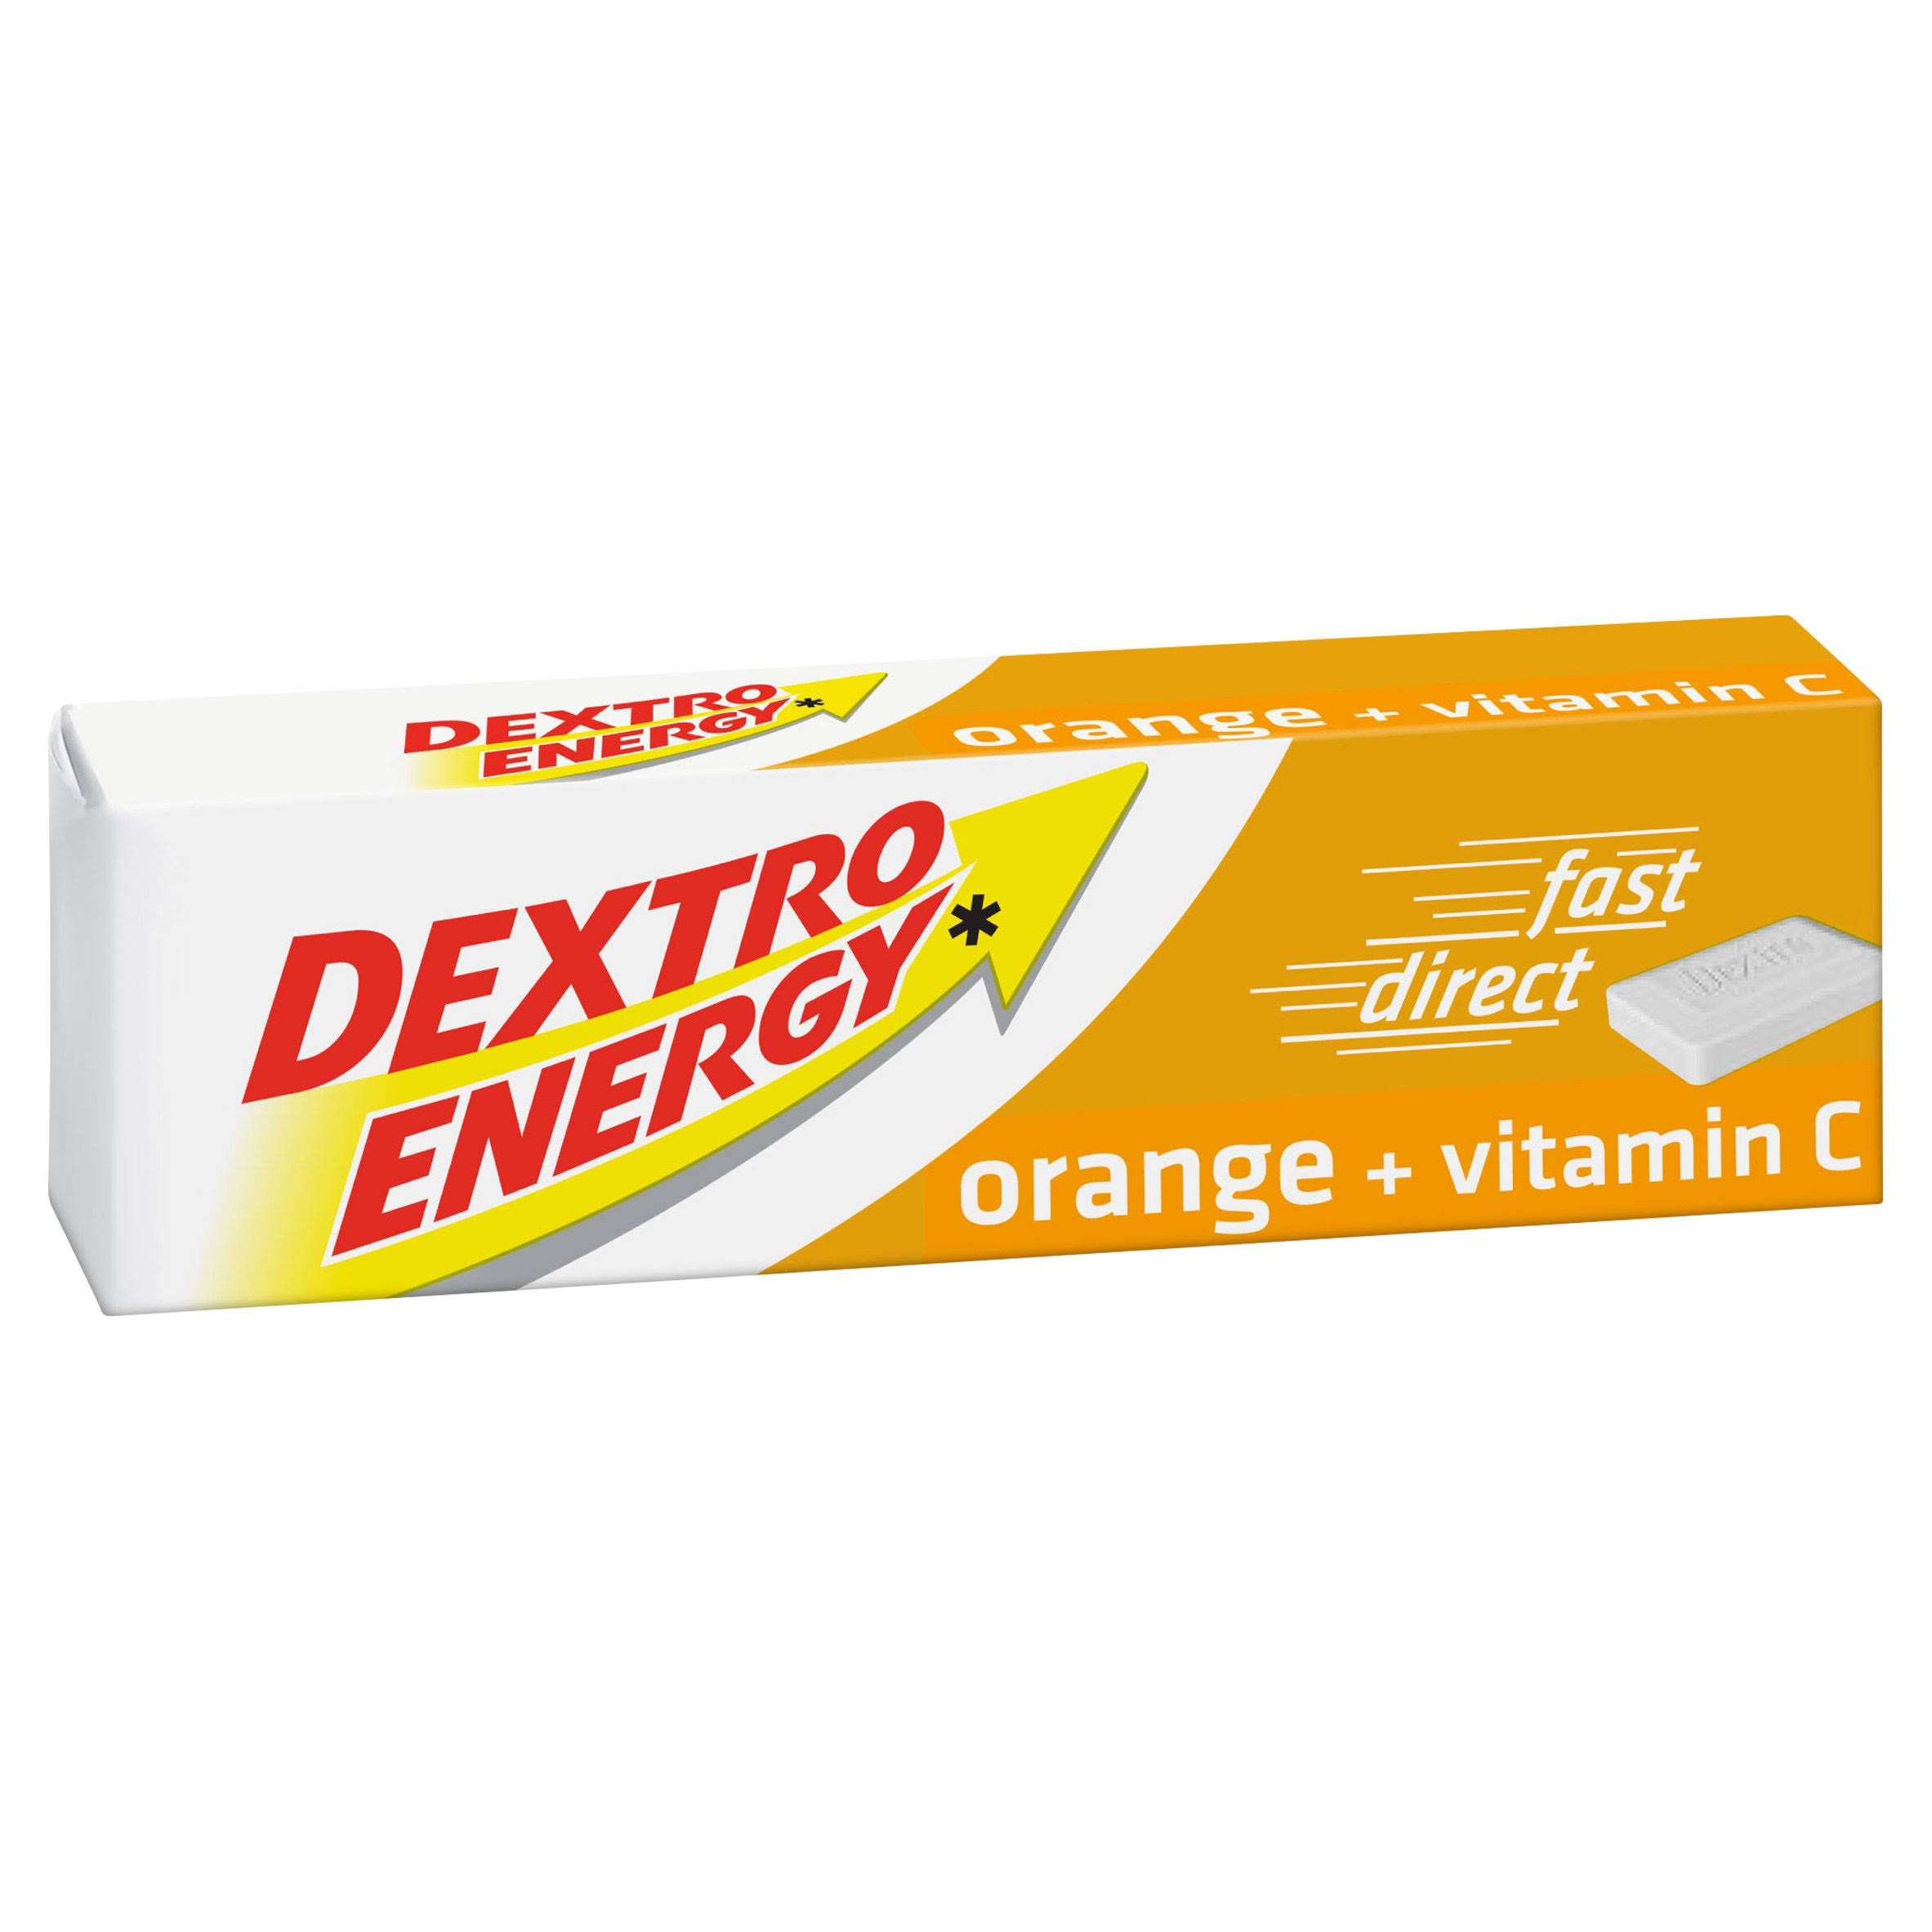 Dextro Energy Dextrose Tablets - Orange Flavour, 47g, 2 Pack